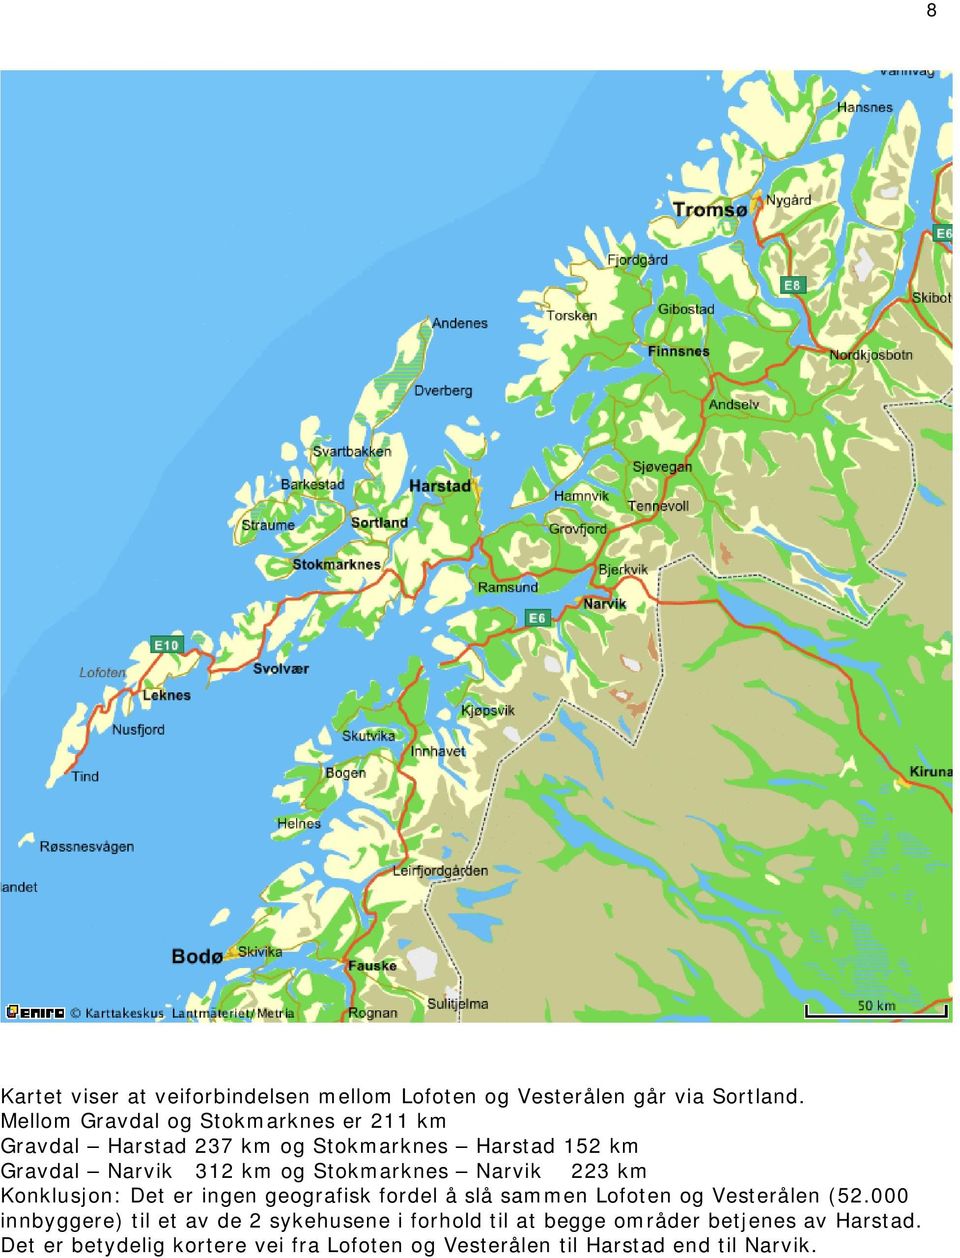 Stokmarknes Narvik 223 km Konklusjon: Det er ingen geografisk fordel å slå sammen Lofoten og Vesterålen (52.